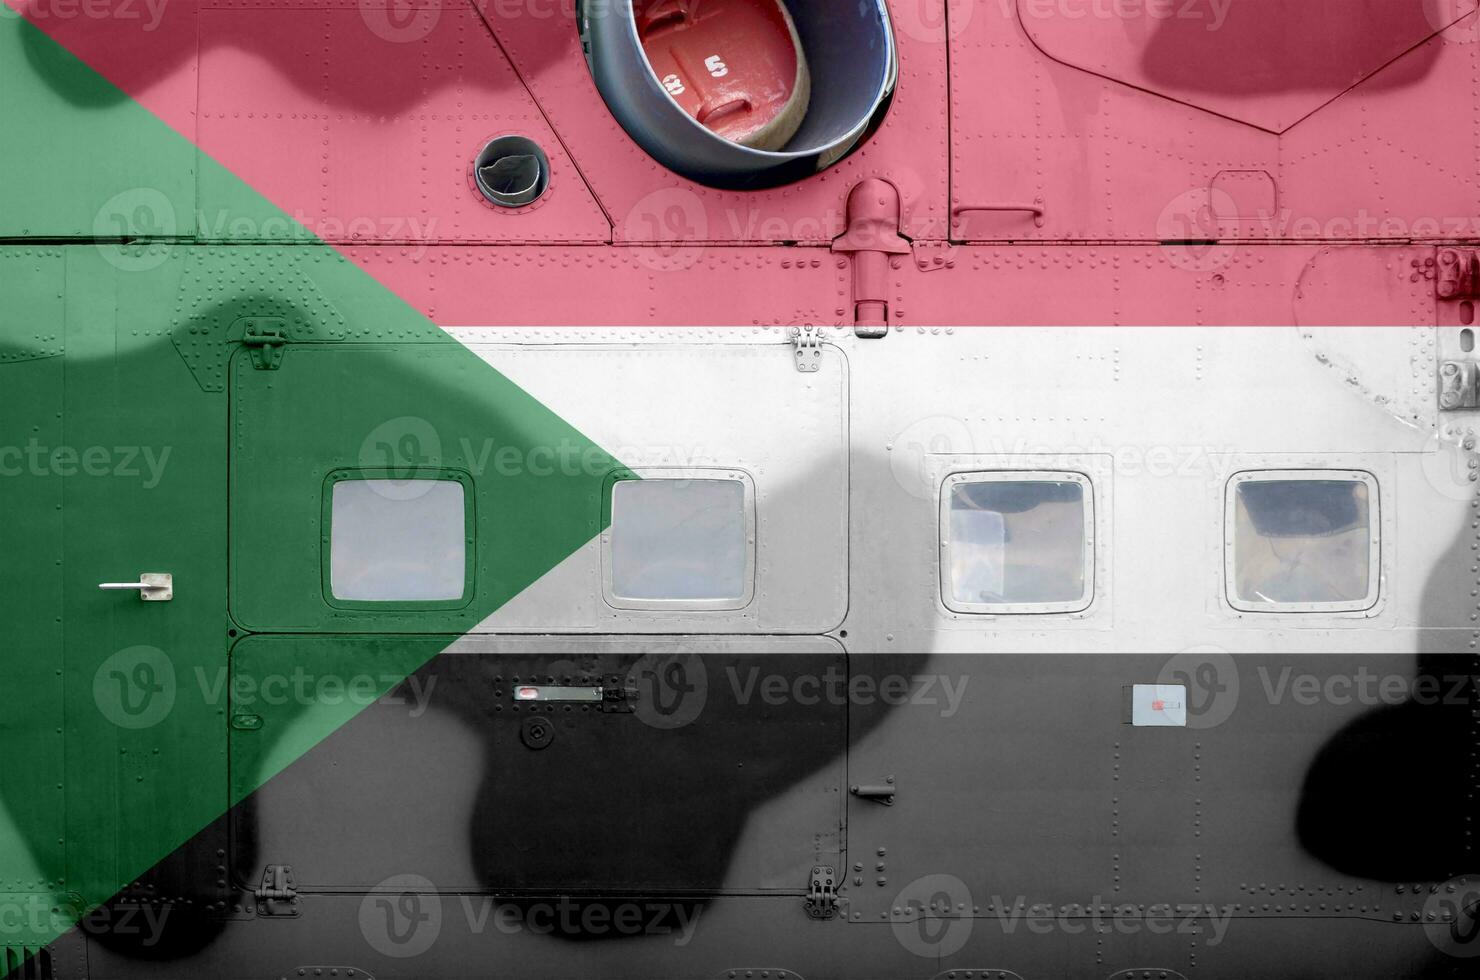 sudan flagga avbildad på sida del av militär armerad helikopter närbild. armén krafter flygplan konceptuell bakgrund foto